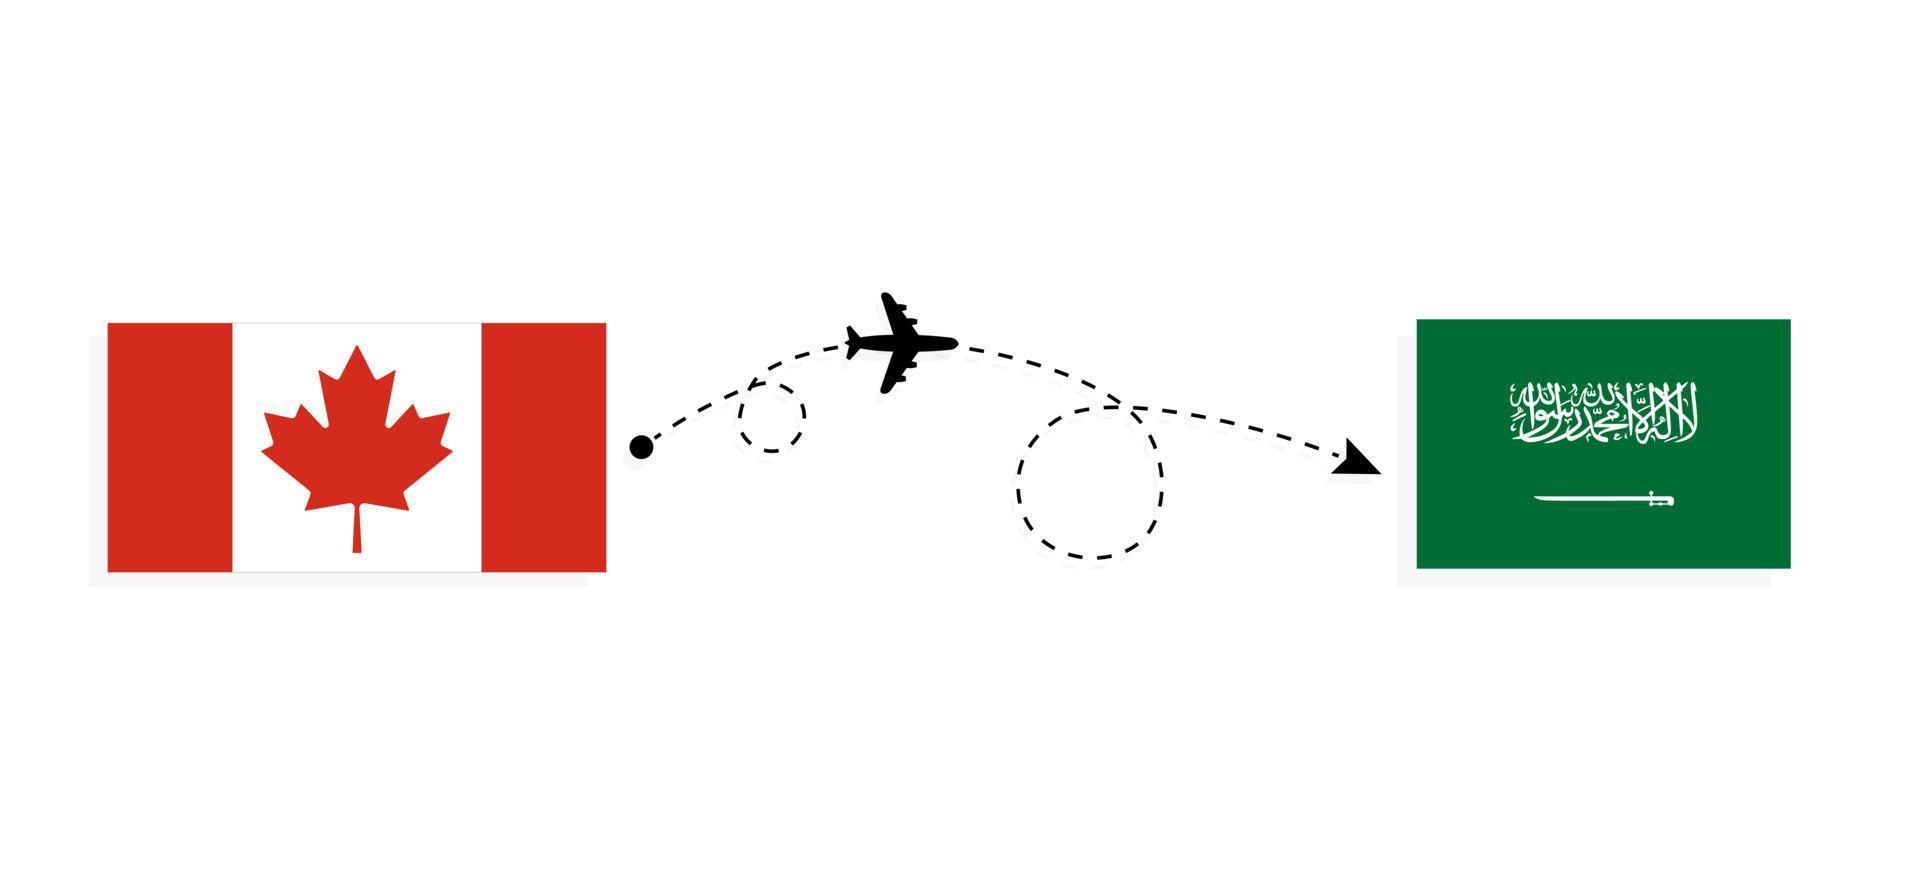 vuelo y viaje desde canadá a arabia saudita en avión de pasajeros concepto de viaje vector